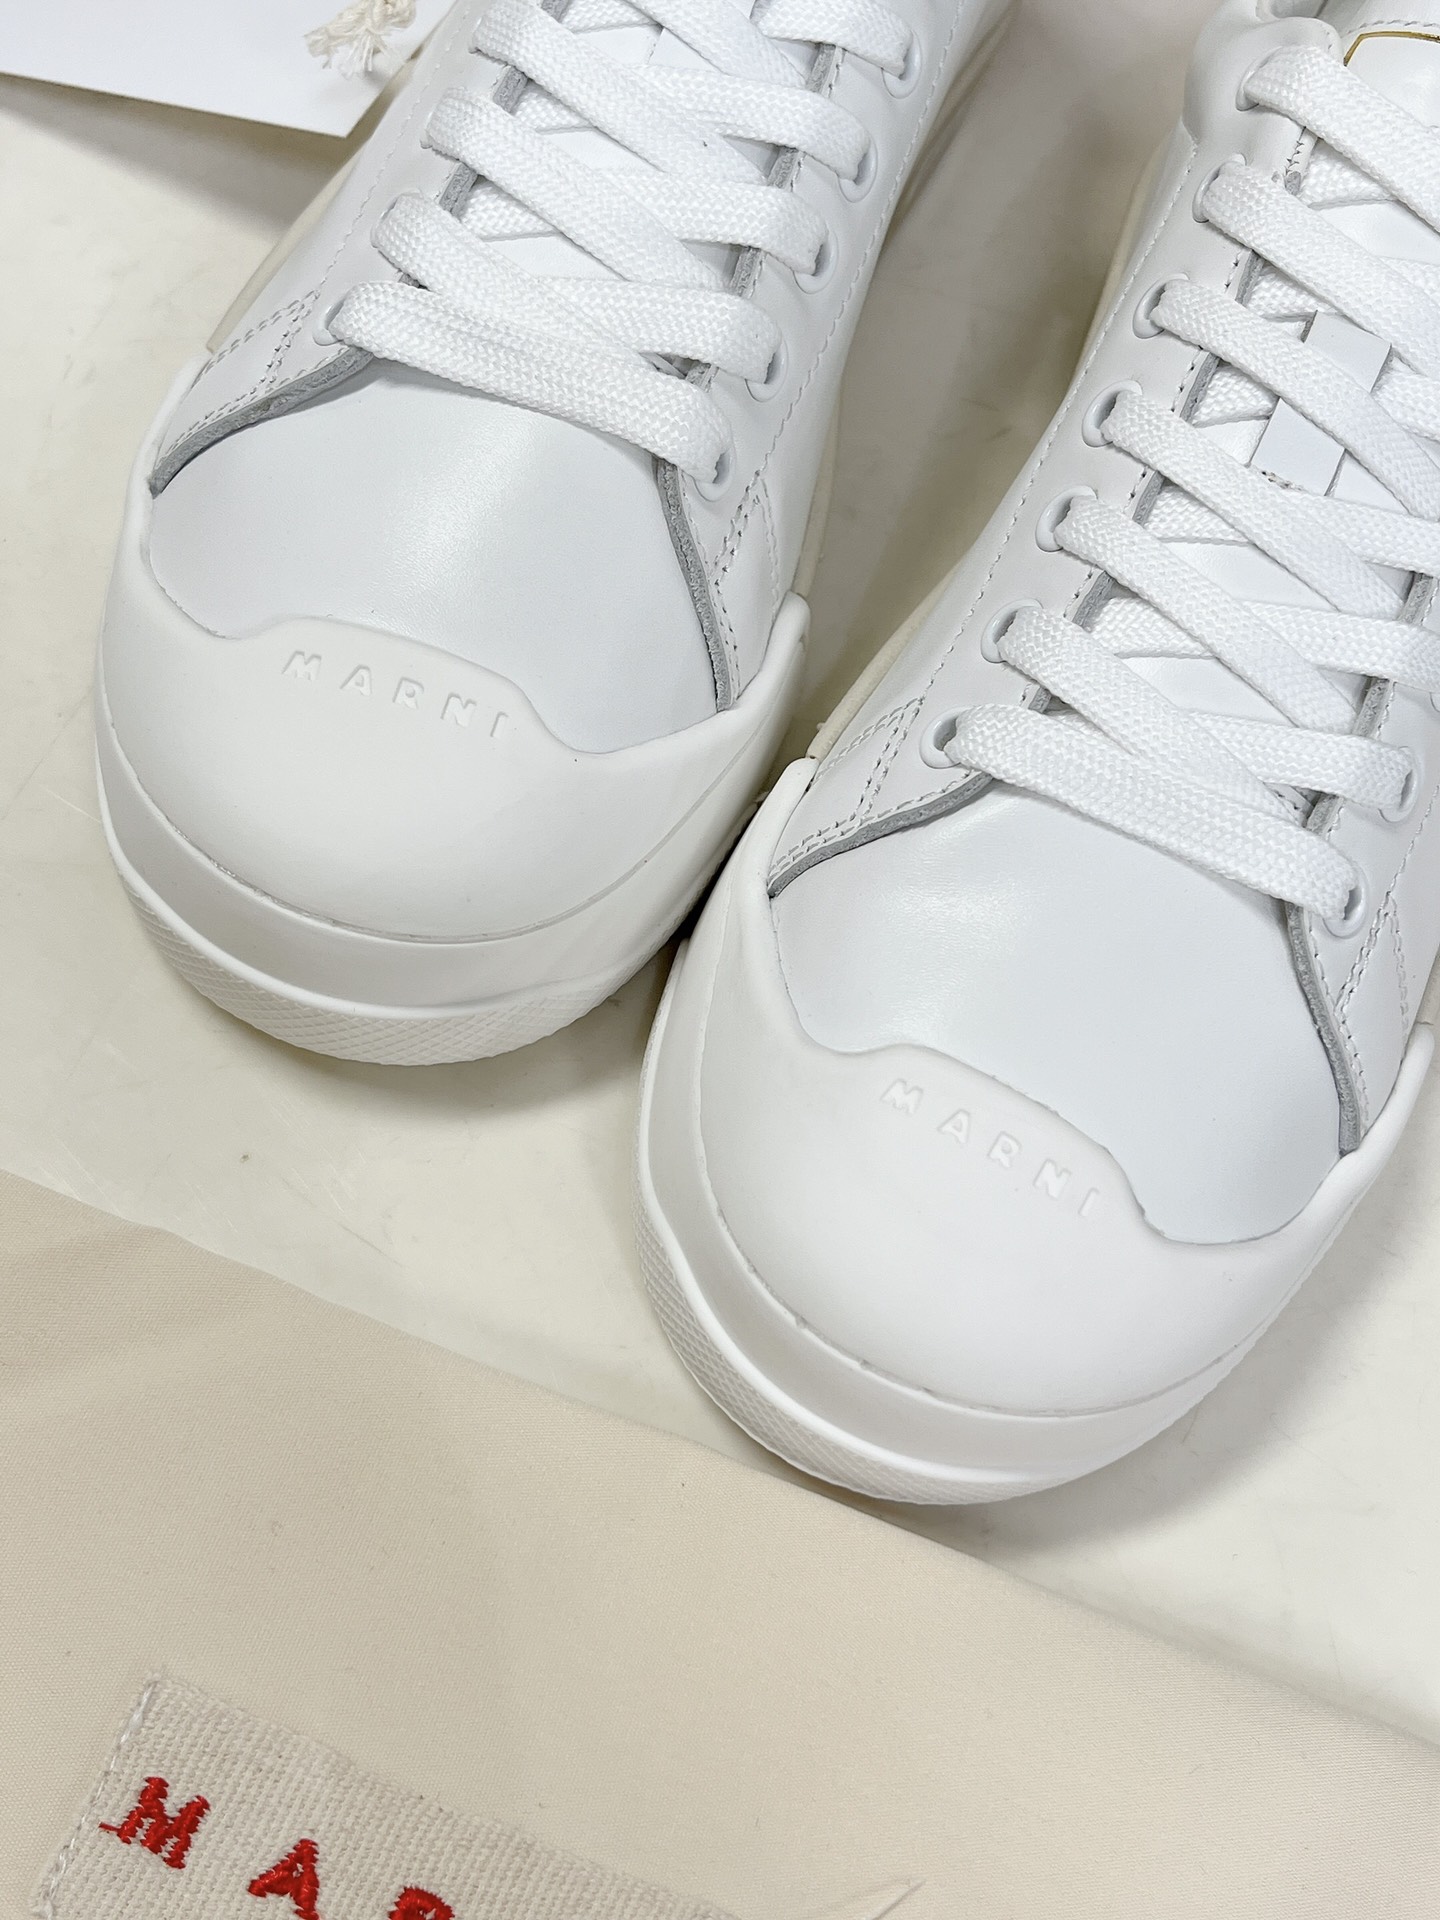 MARNI玛尼DADABUMPER系列休闲运动鞋贝壳头饼干鞋小白鞋在鞋子的前后都搭载了橡胶保护层一方面增